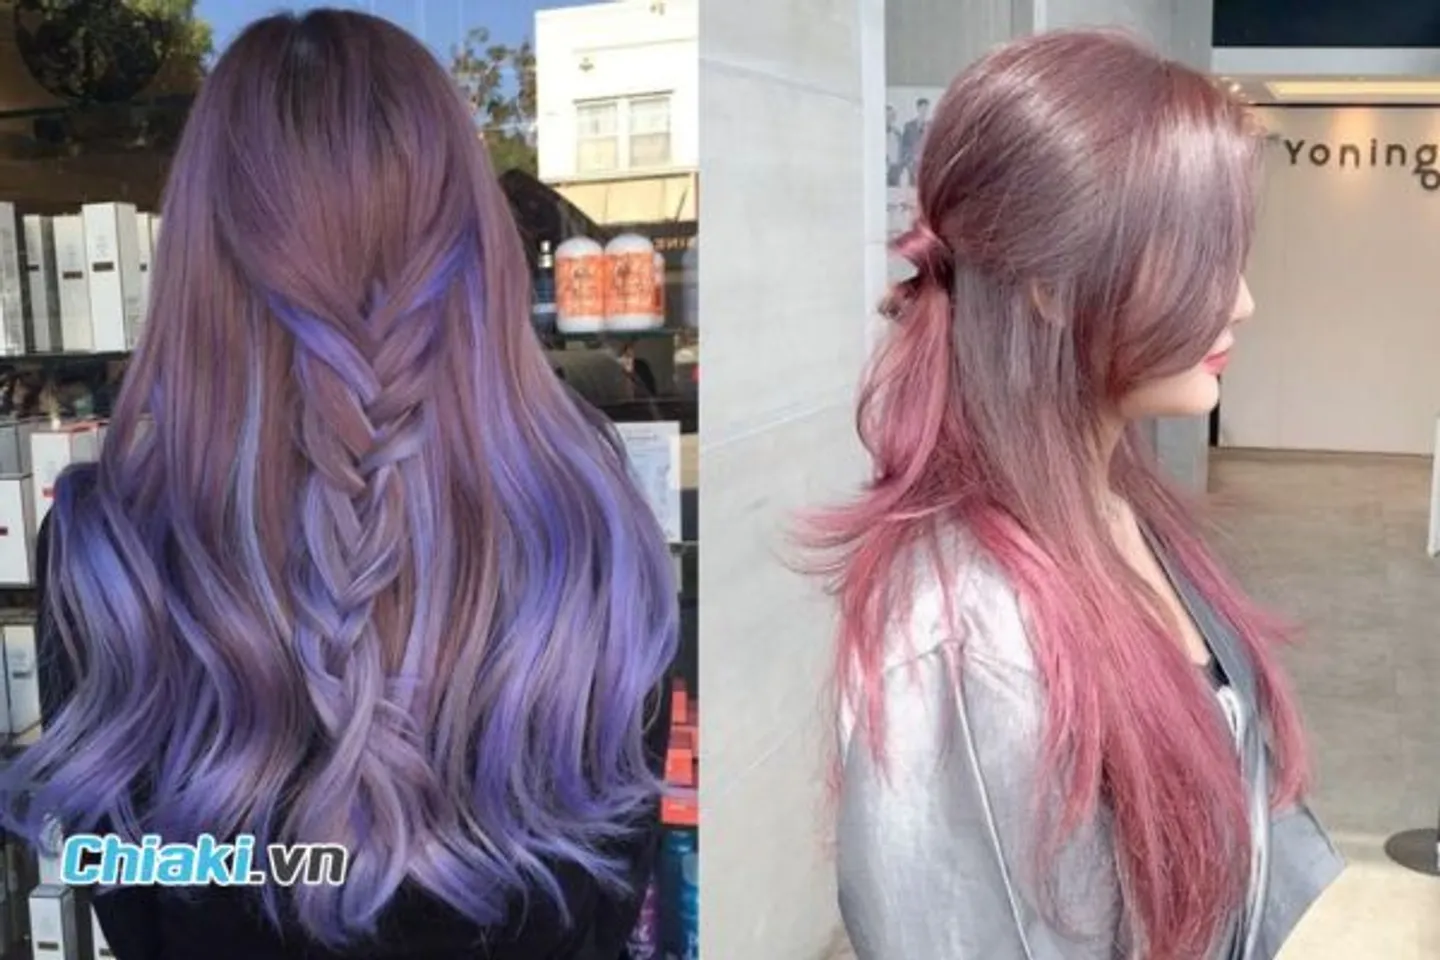 Kiểu tóc nhuộm mang lại domain authority ngăm màu sắc tím và hồng khói